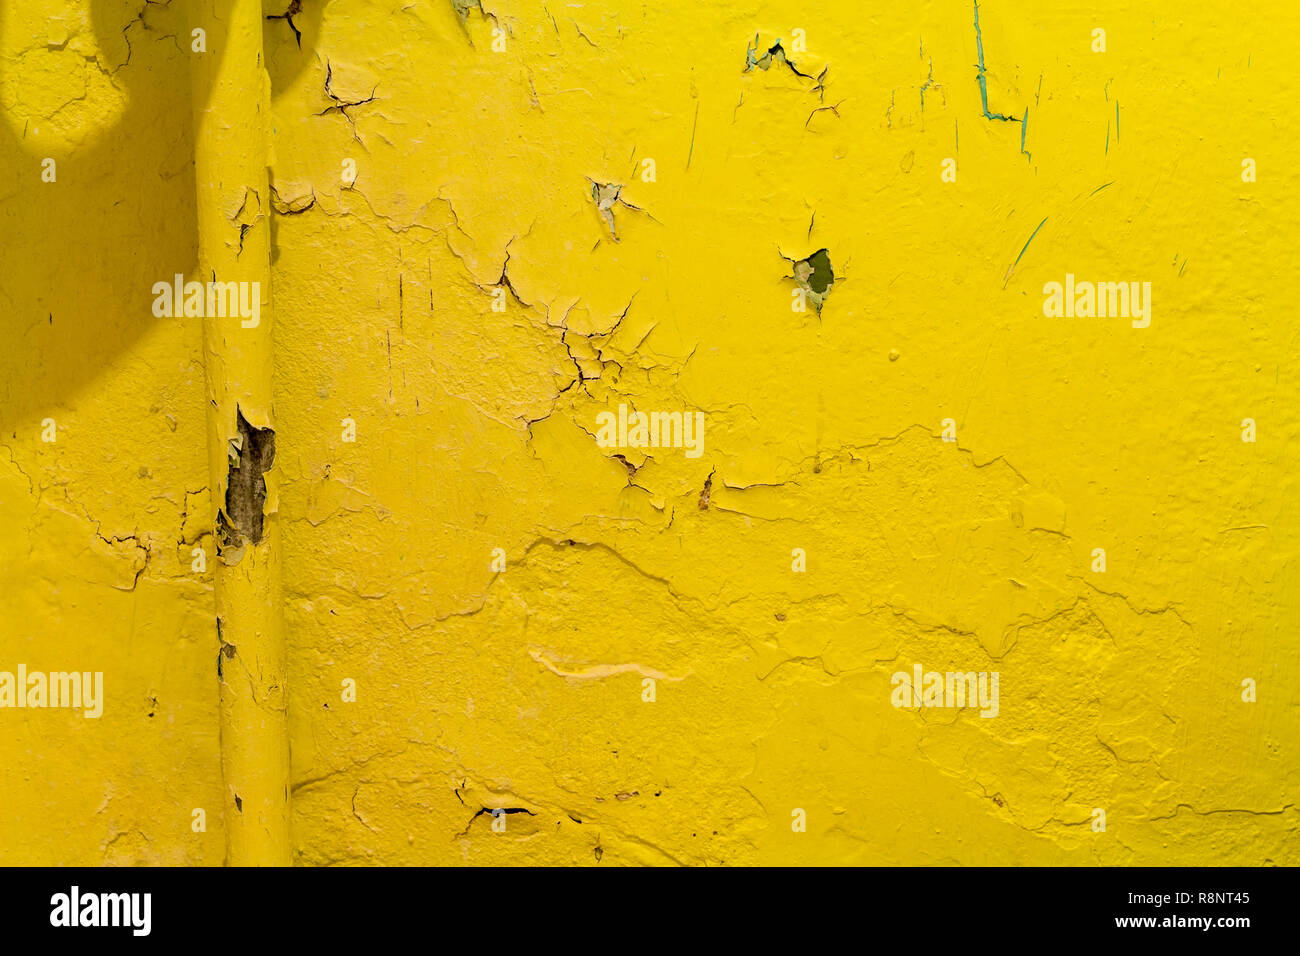 Il giallo caldo riscaldamento sullo sfondo di peeling parete di vernice Foto Stock